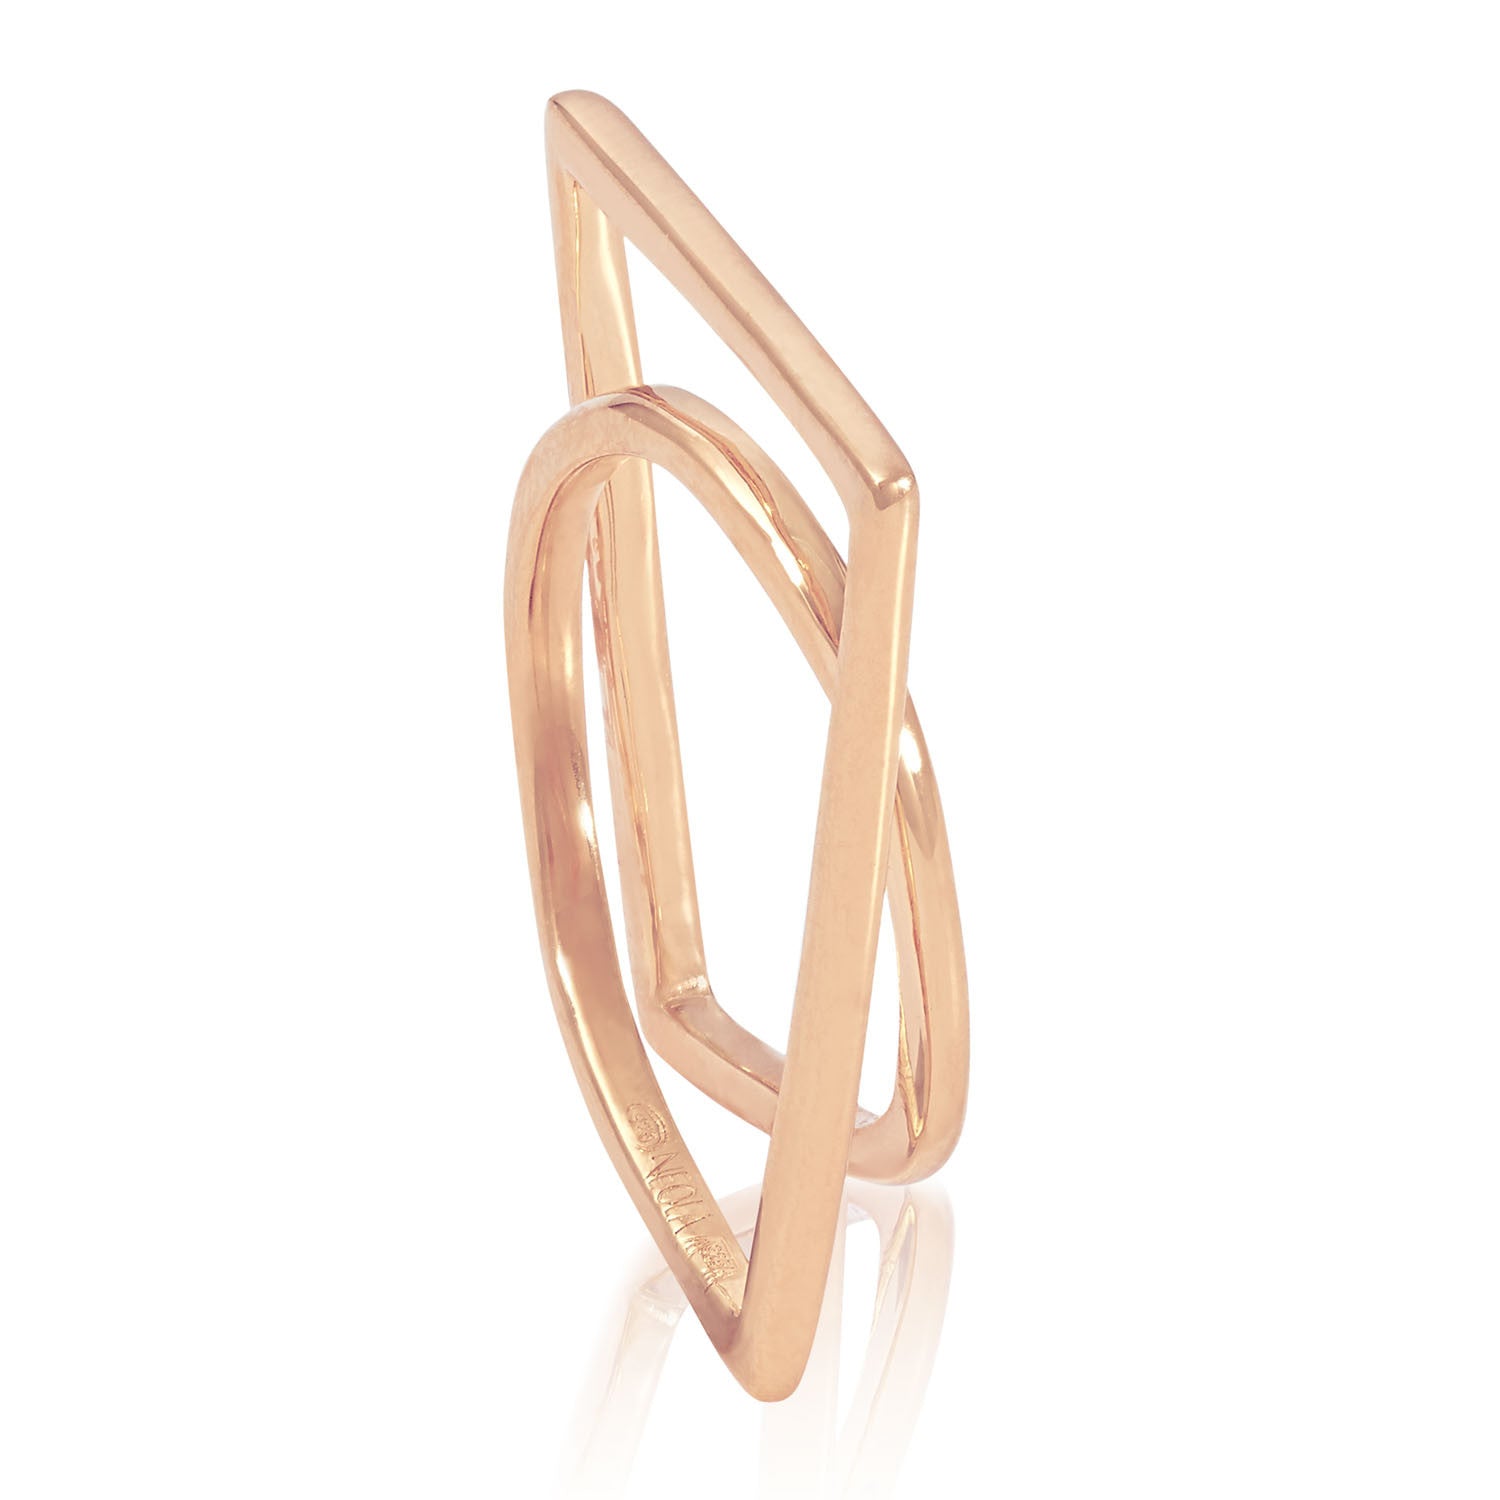 Rose gold sculptured ring, Geometric, unique British design